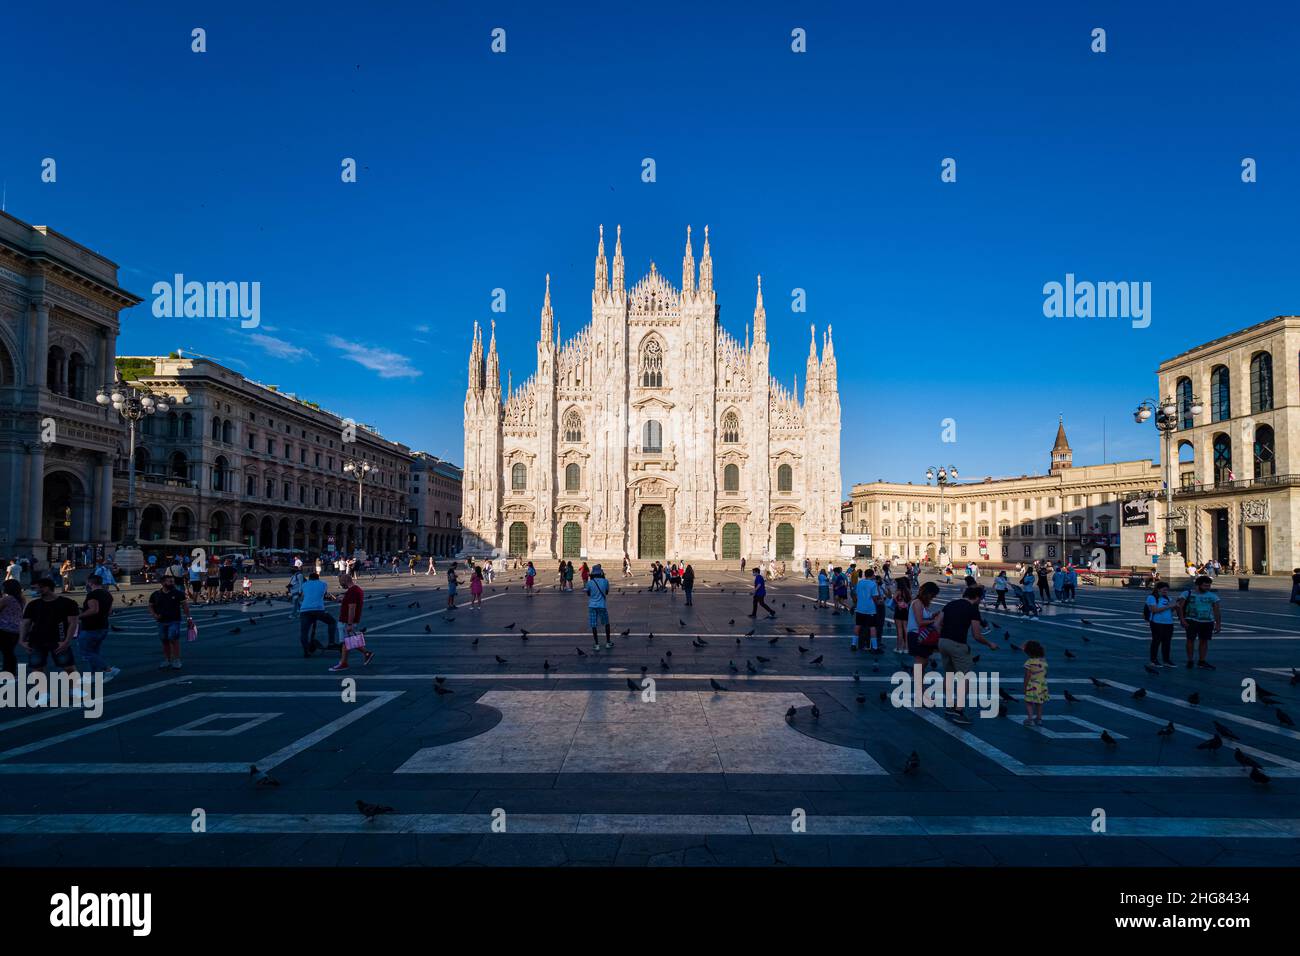 Vista de la fachada de la catedral de Milán, Duomo di Milano, vista desde la Plaza de la Catedral, Piazza del Duomo. Foto de stock